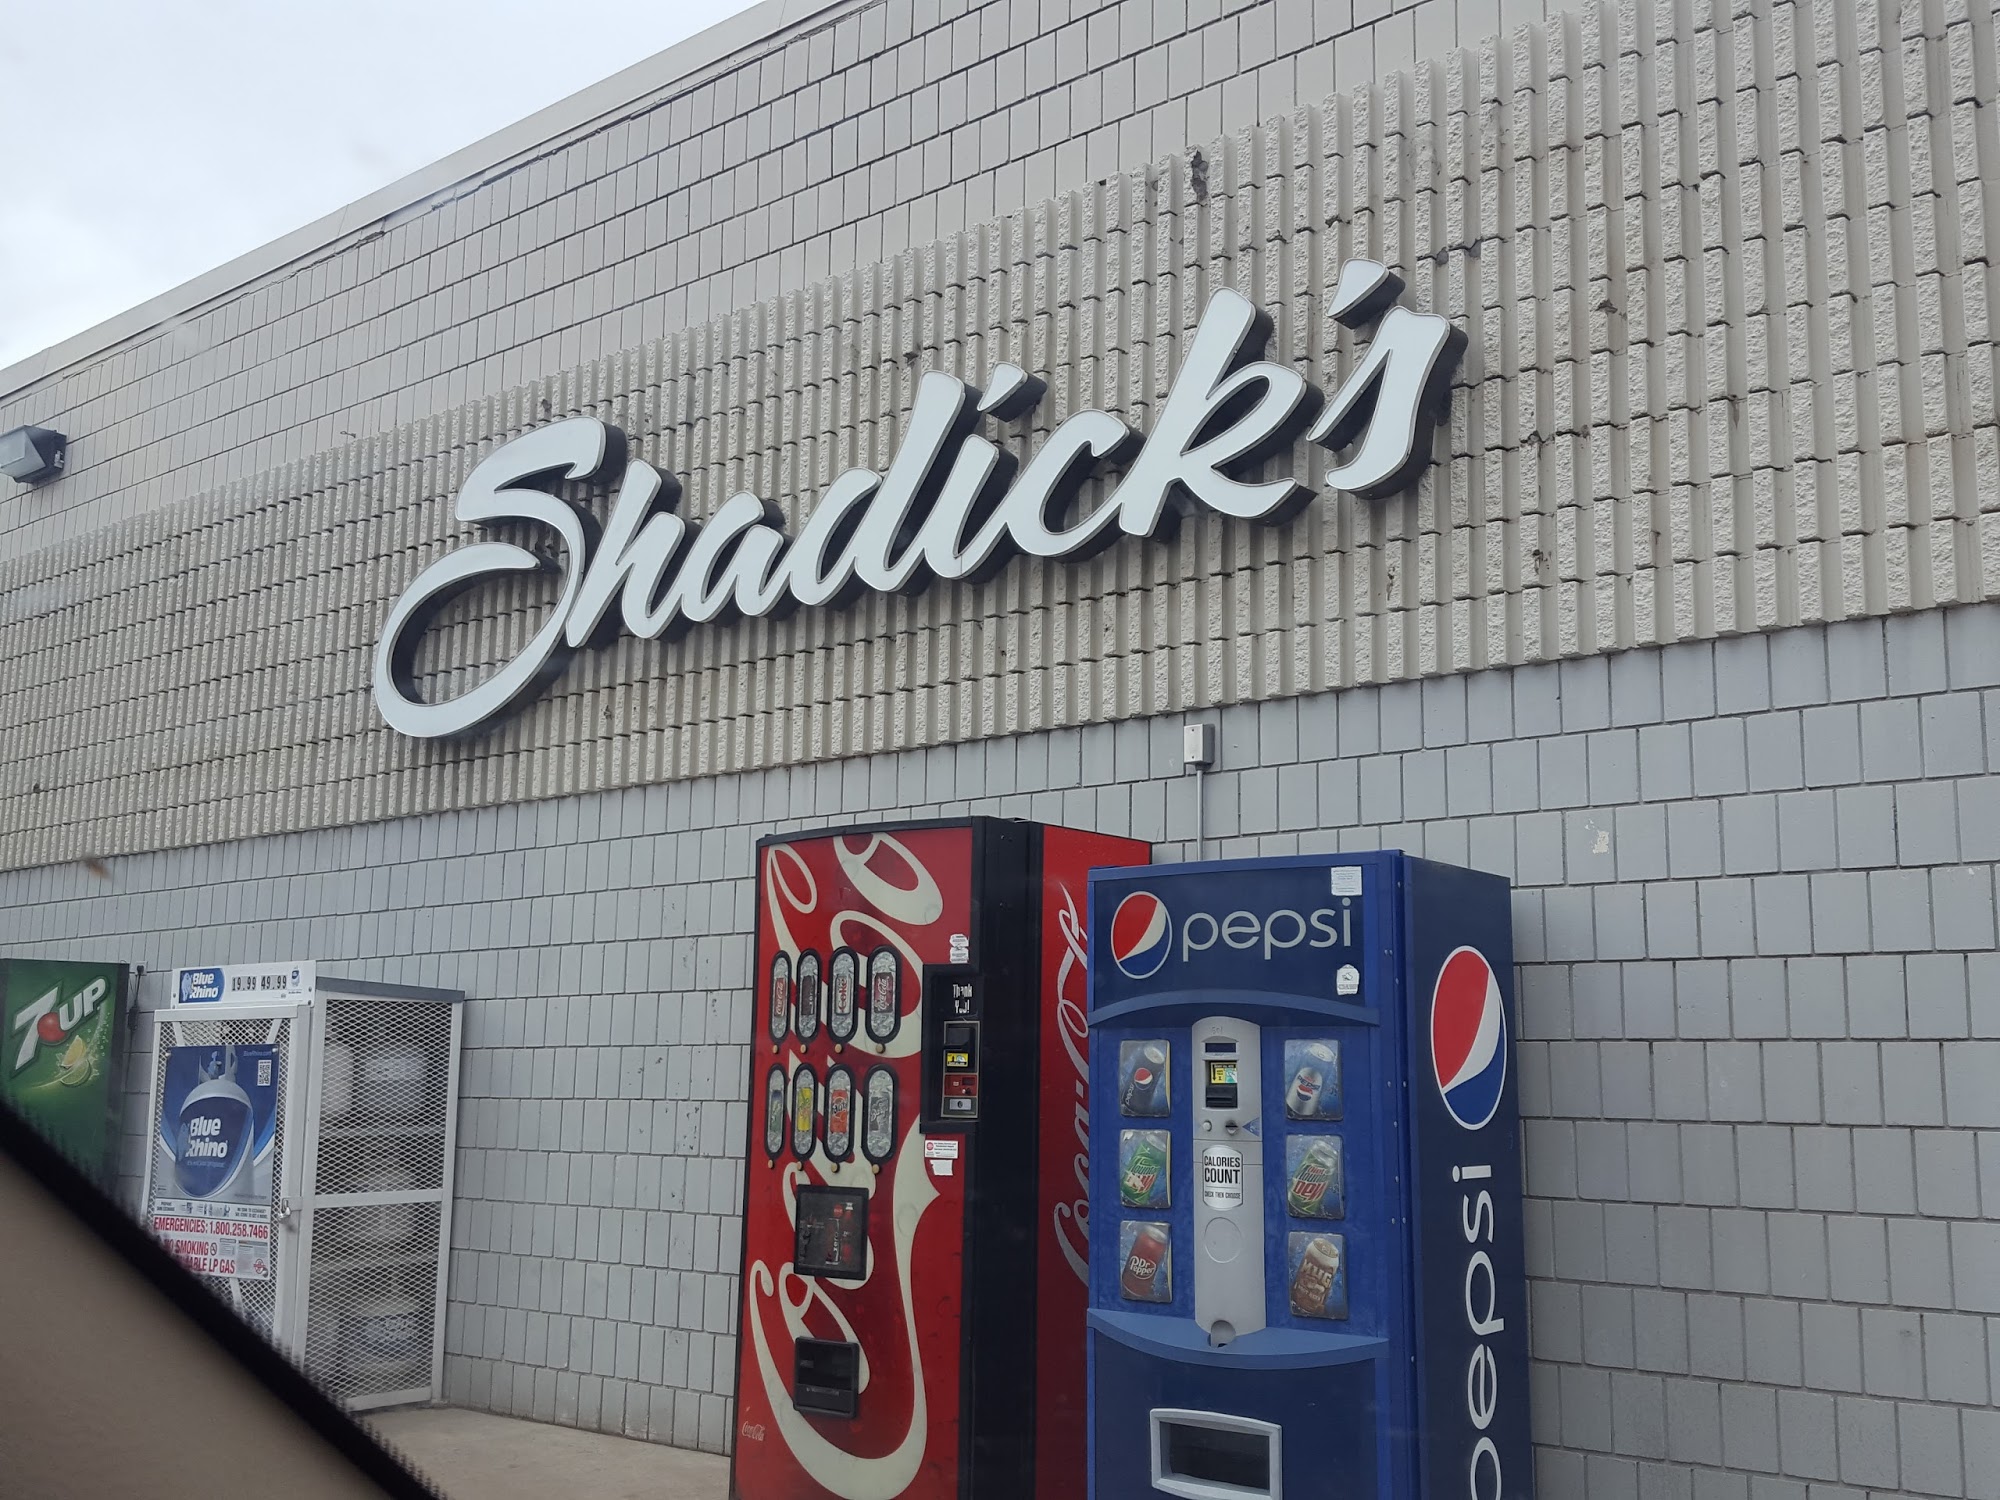 Shadick's